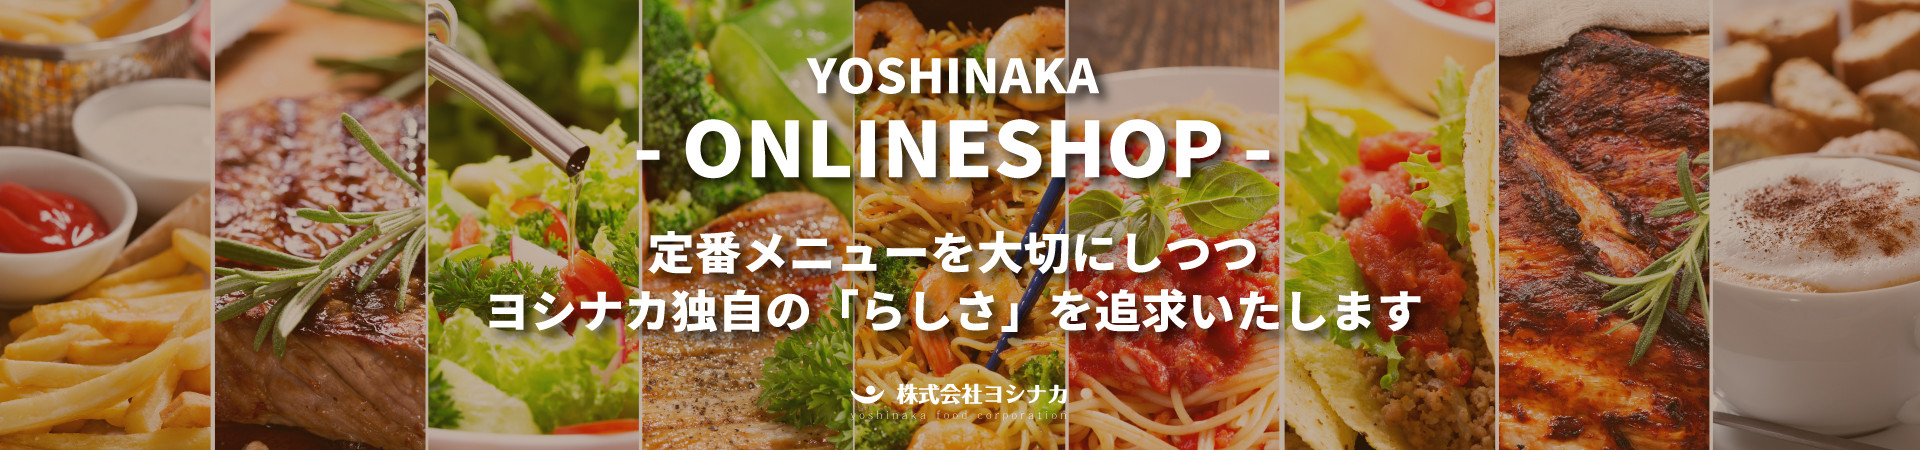 yoshinaka